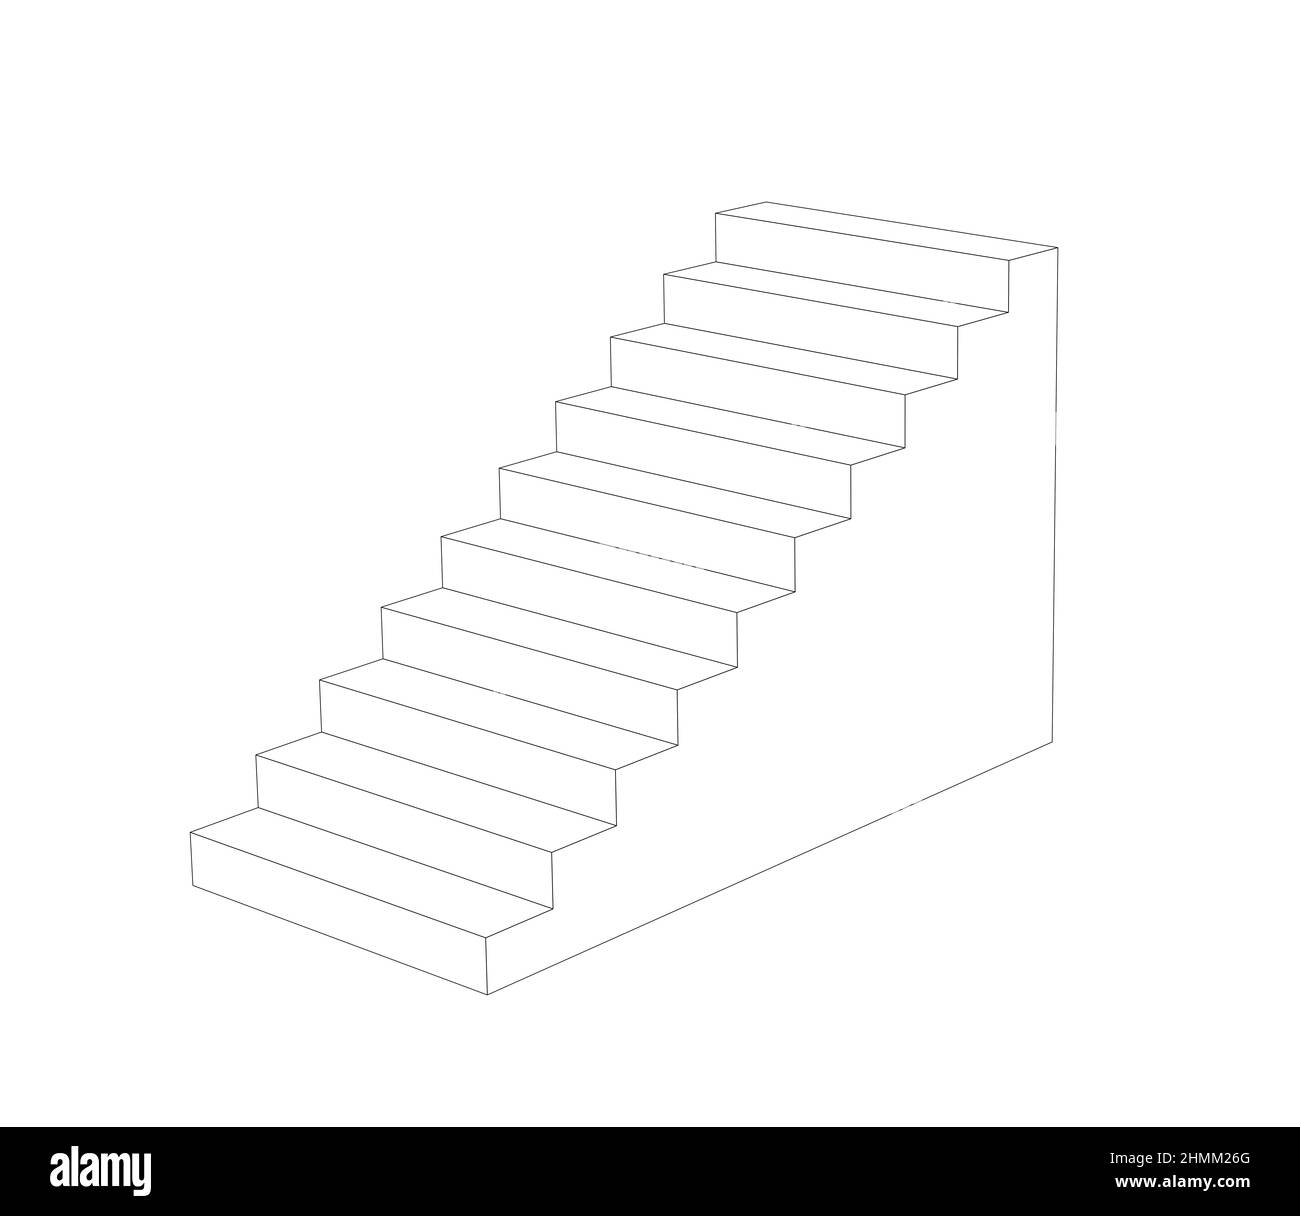 semplice disegno prospettico delle scale. contorno nero 3d illustrazione Foto Stock